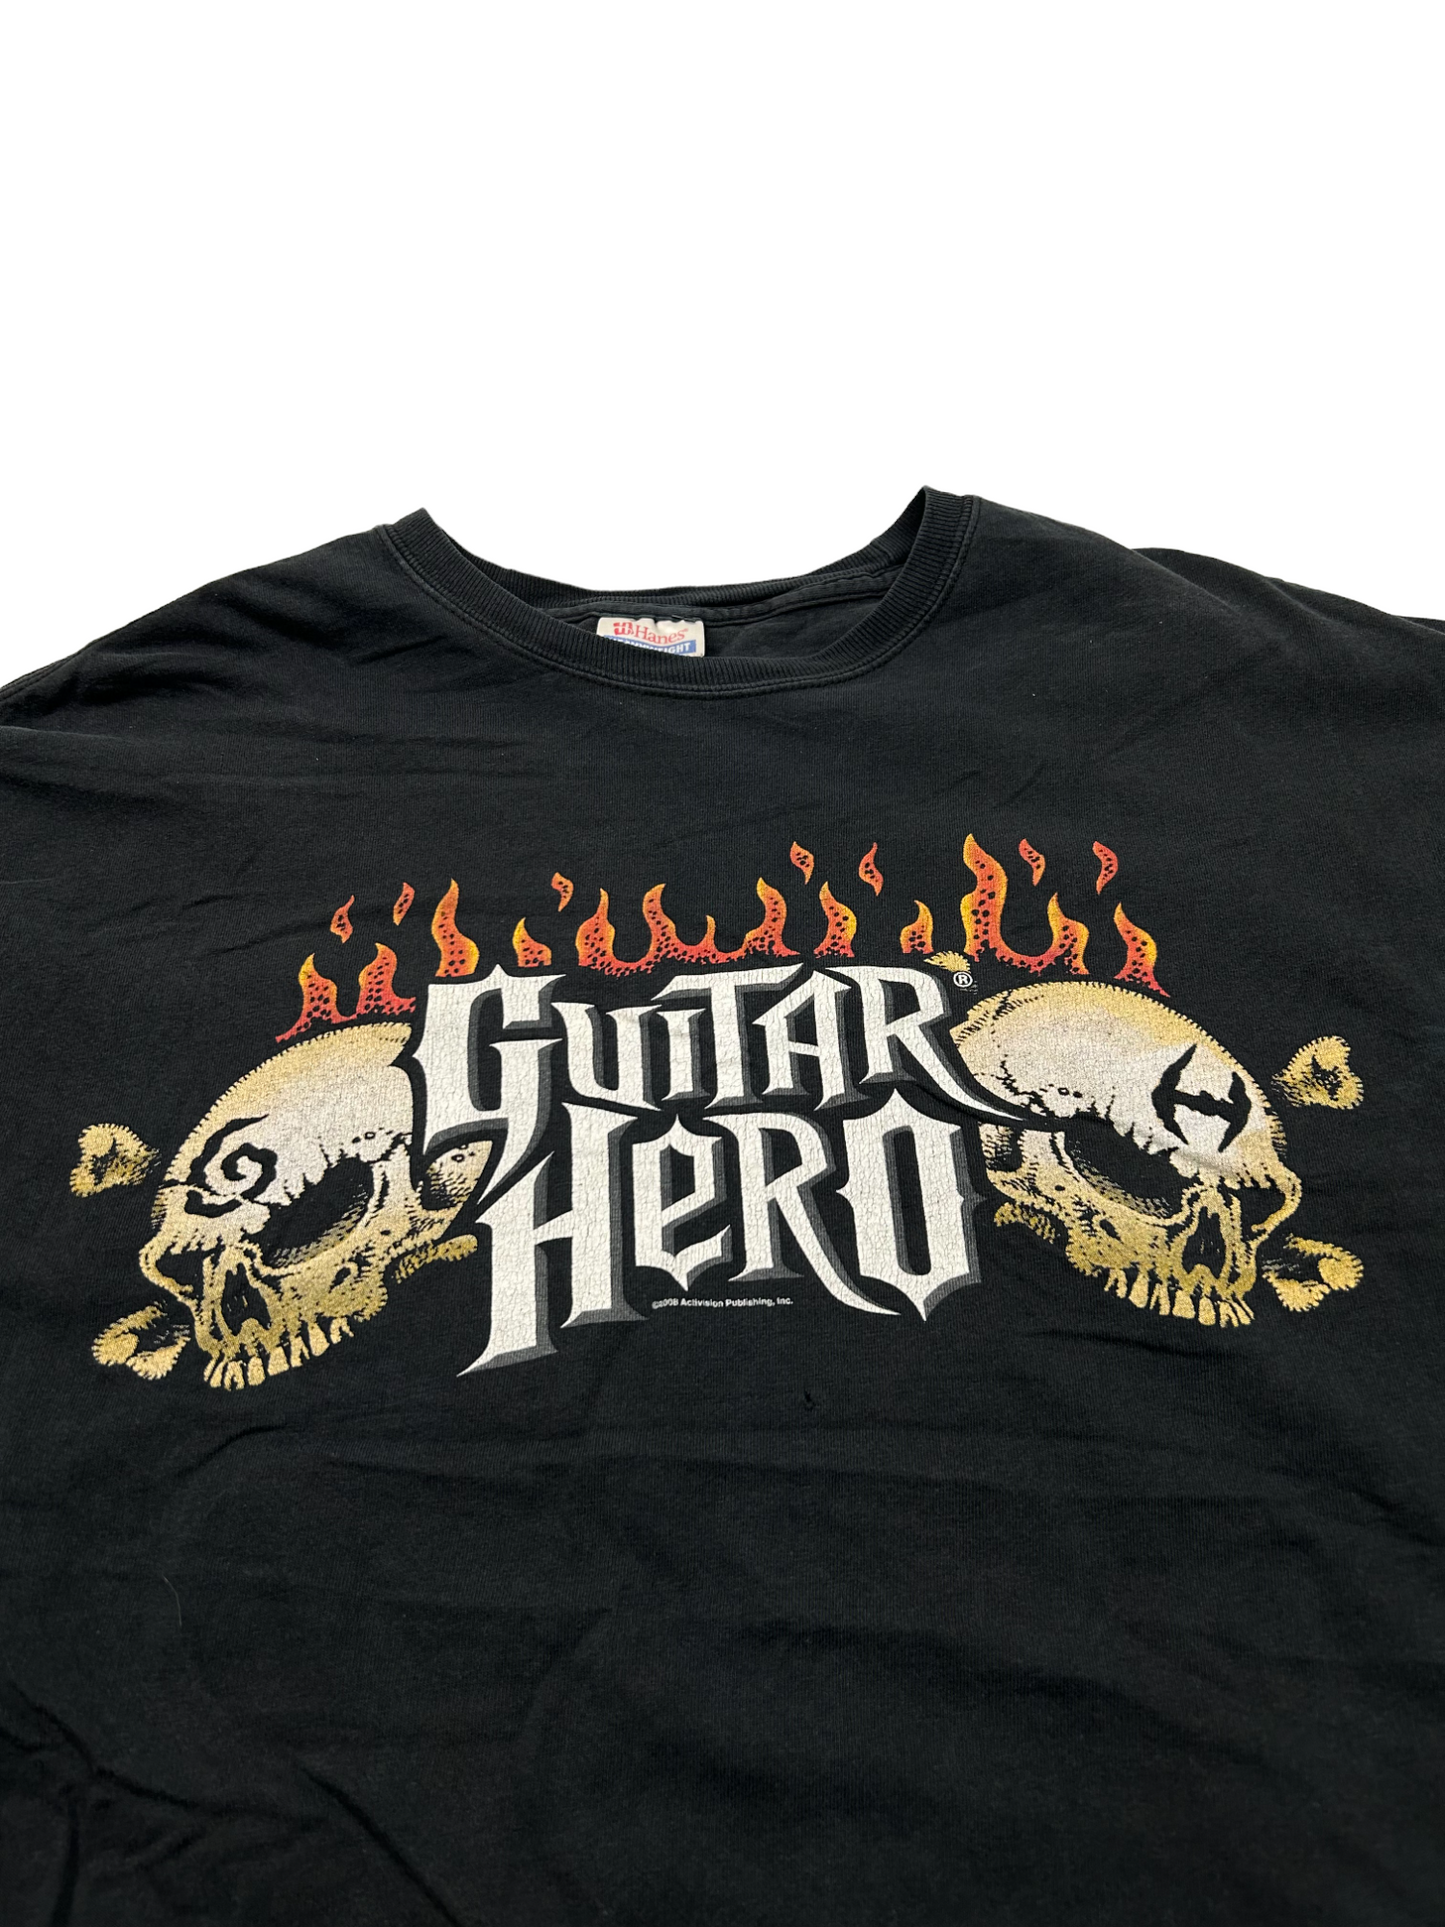 Guitar Hero T-Shirt